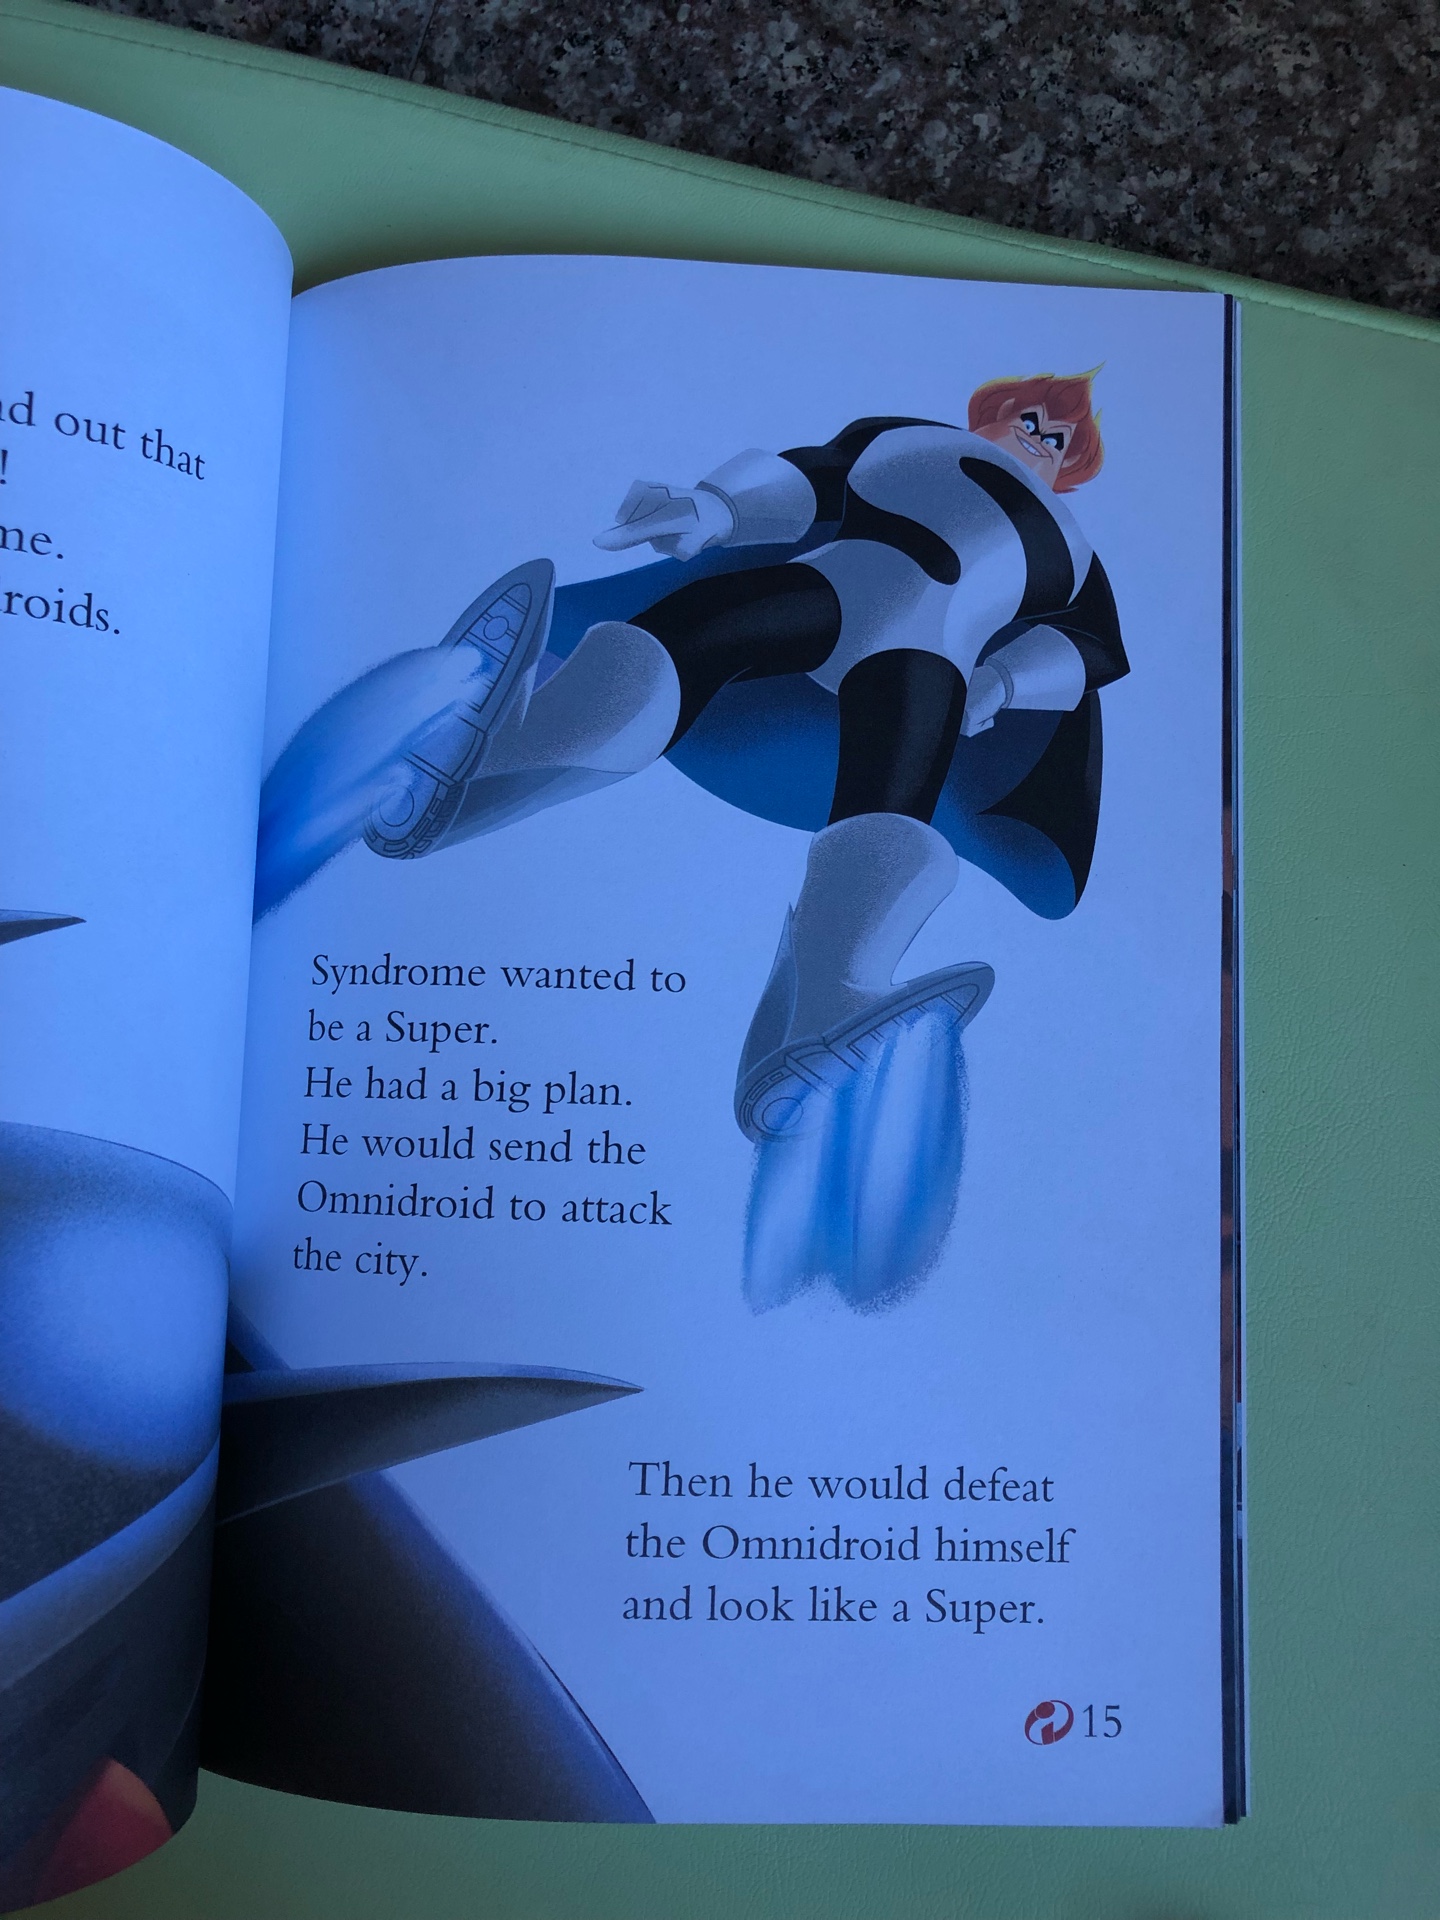 ??迪士尼动画故事英语分级读物. 第3级合辑（套装共4册），妈妈觉得这套有点难，自己看起来都费劲。。。目前也是囤货，自己先消化在给孩子读。